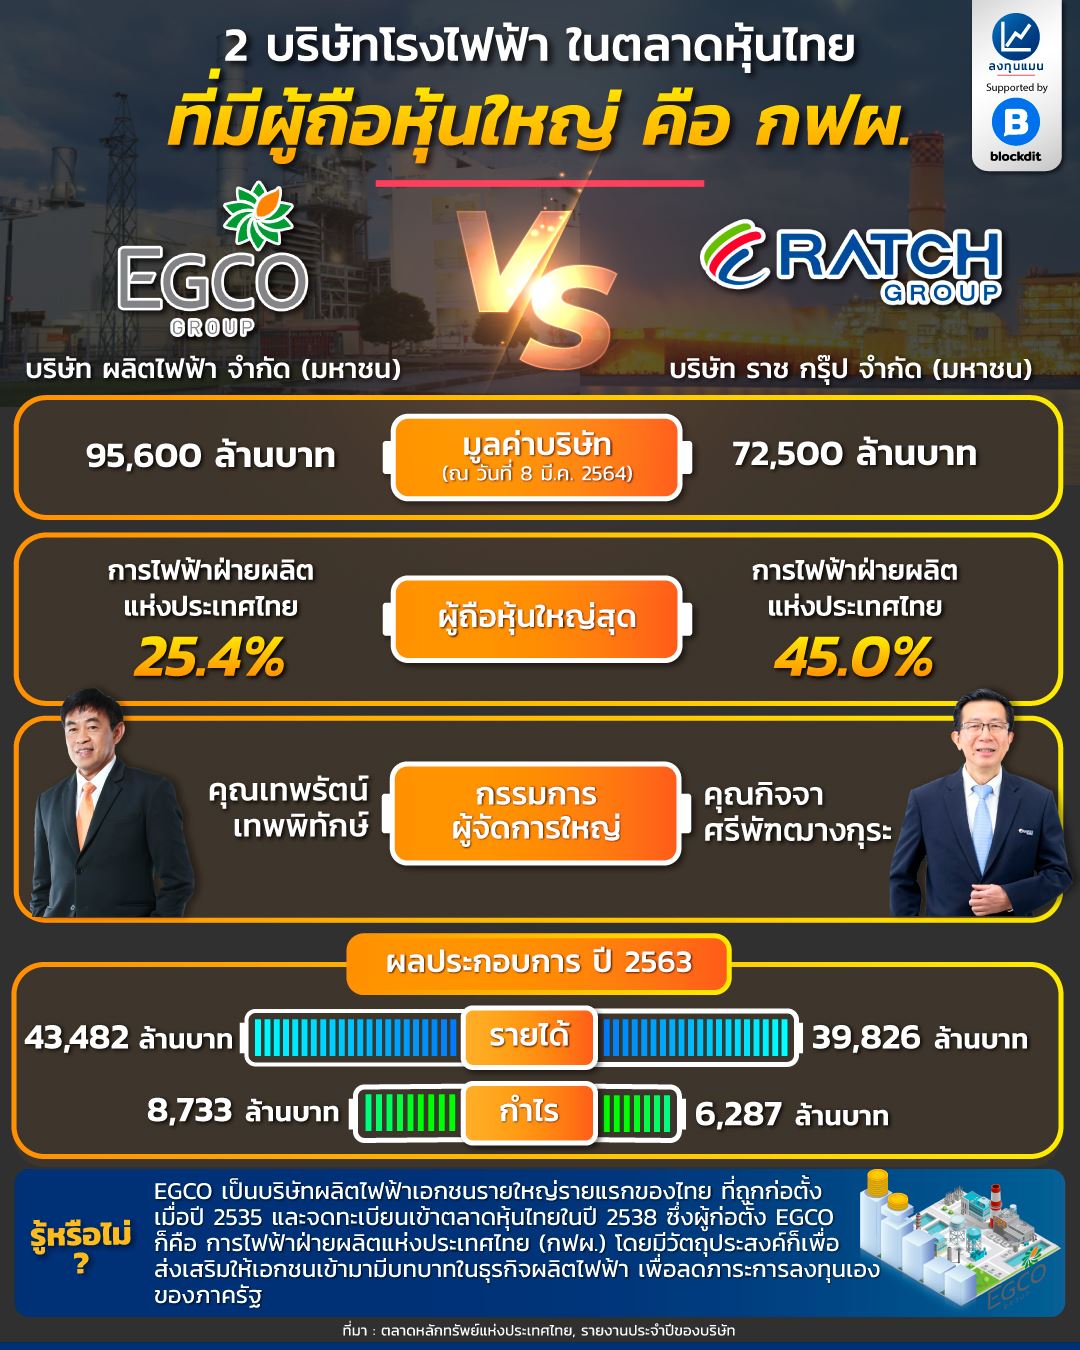 EGCO vs RATCH 2 บริษัทโรงไฟฟ้าในตลาดหุ้นไทย ที่มีผู้ถือหุ้นใหญ่ คือ กฟผ.